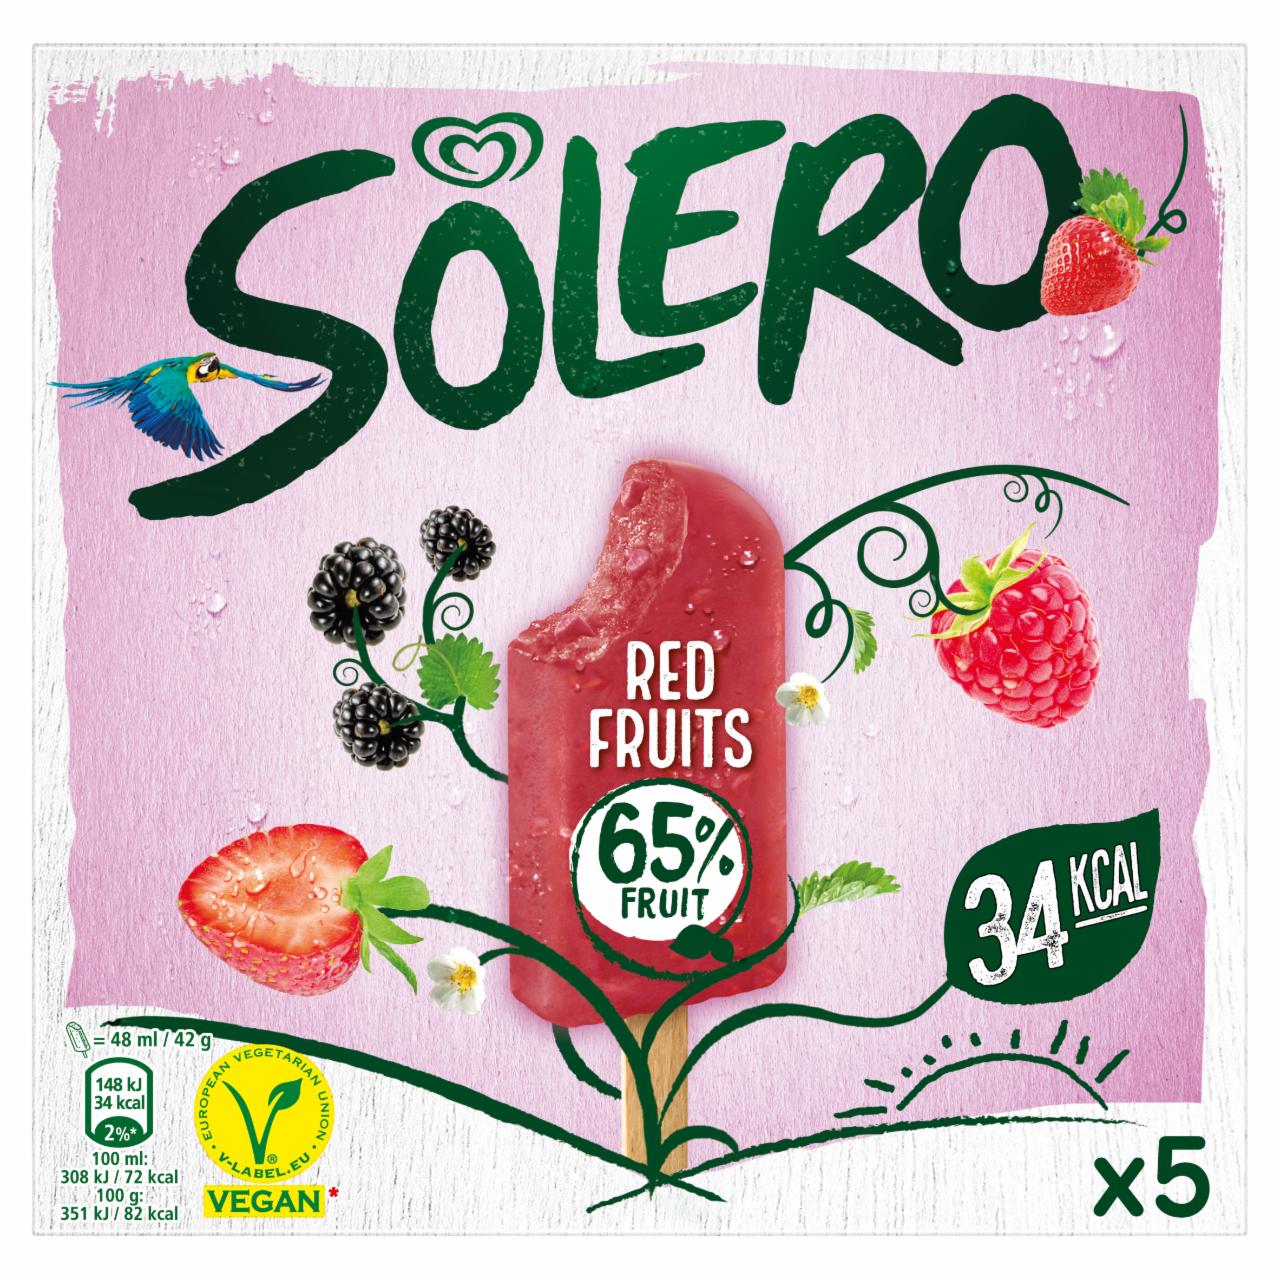 Képek - Solero multipack jégkrém piros gyümölcsös 5 x 48 ml